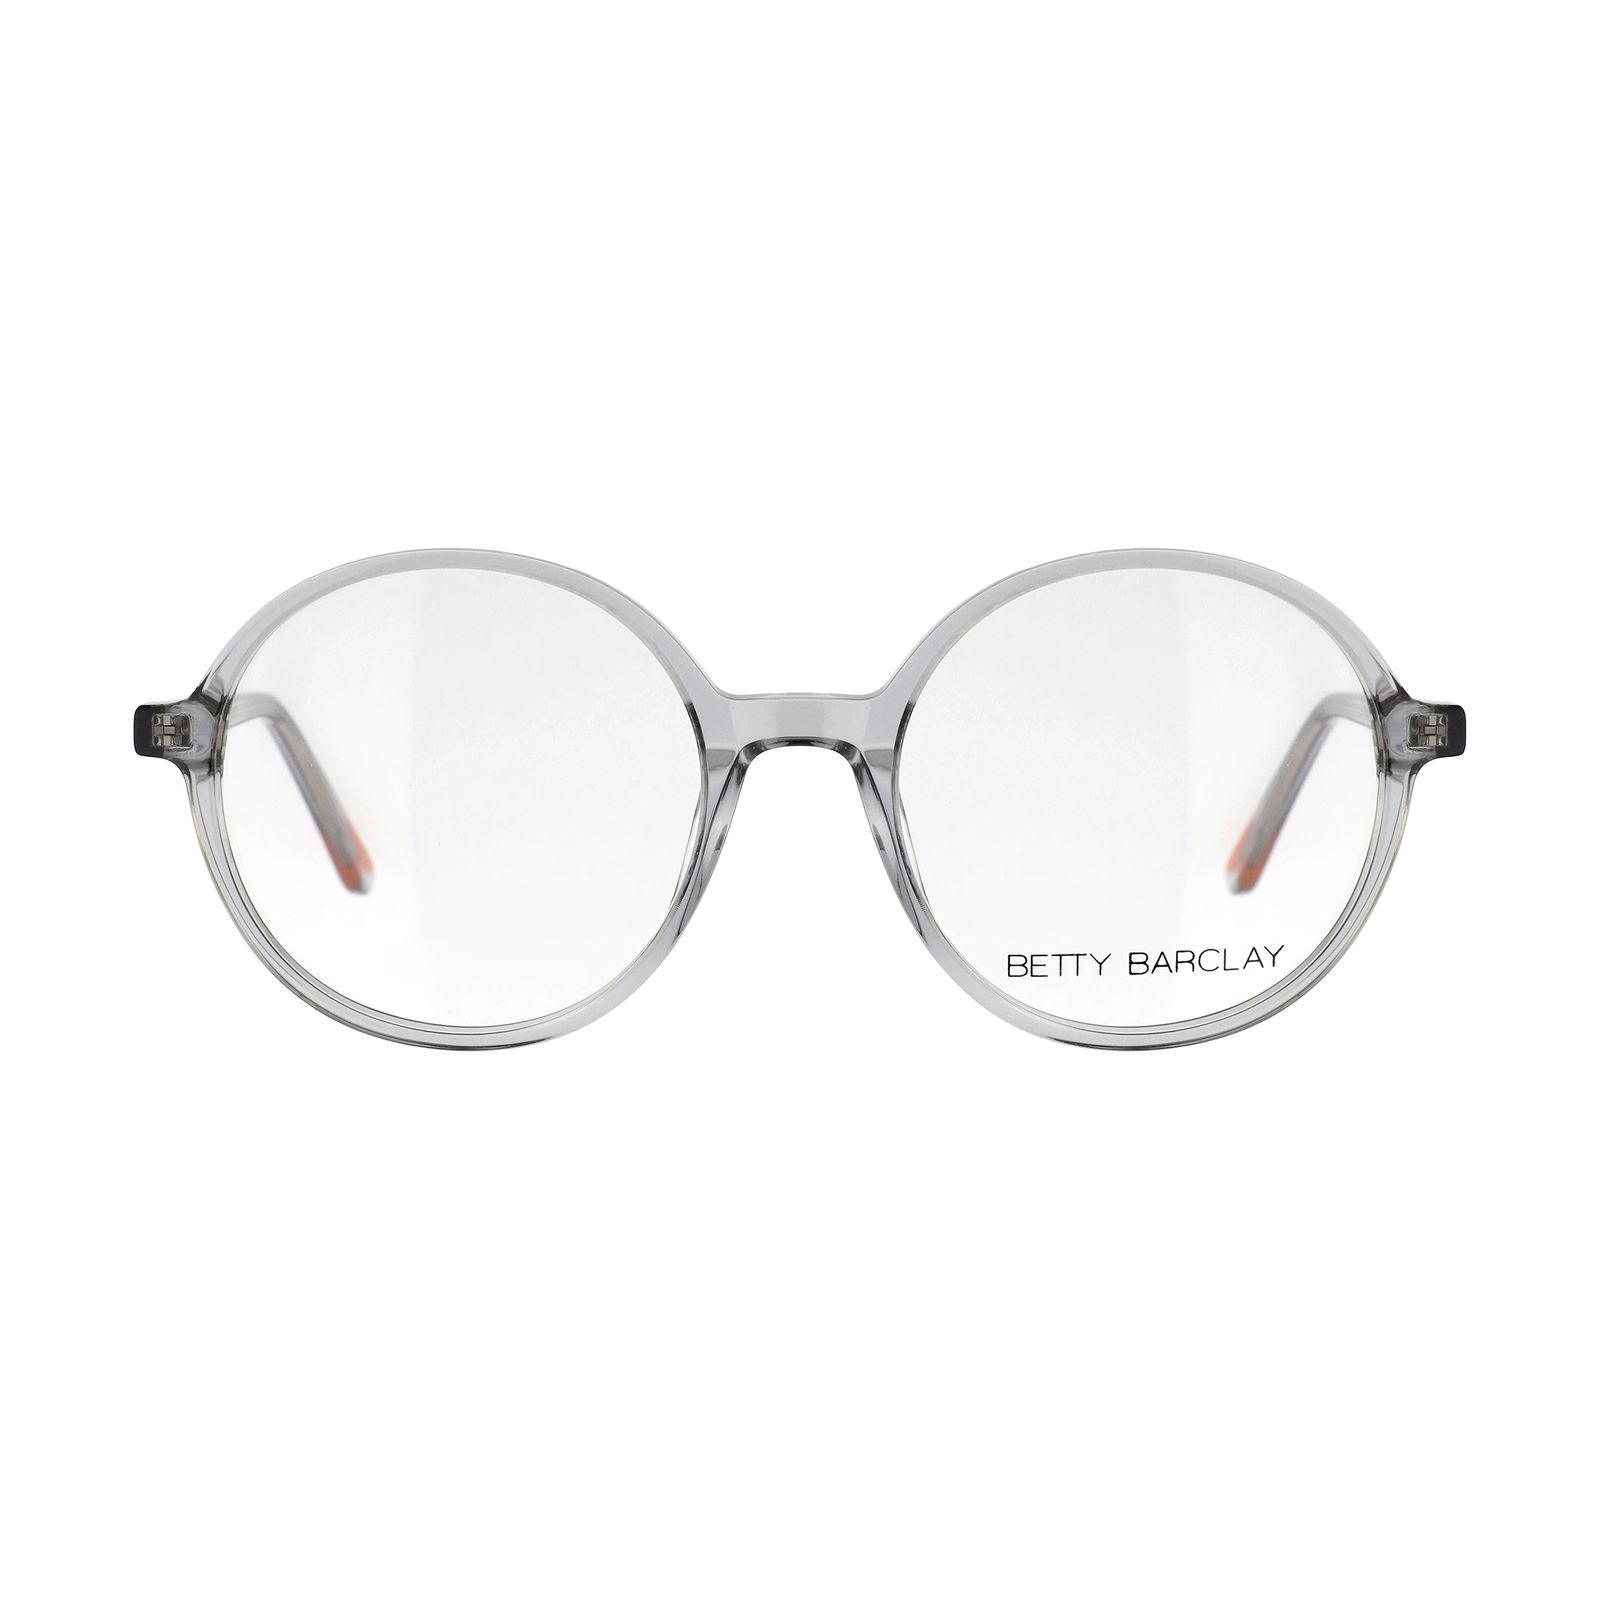 فریم عینک طبی بتی بارکلی مدل 51164-654